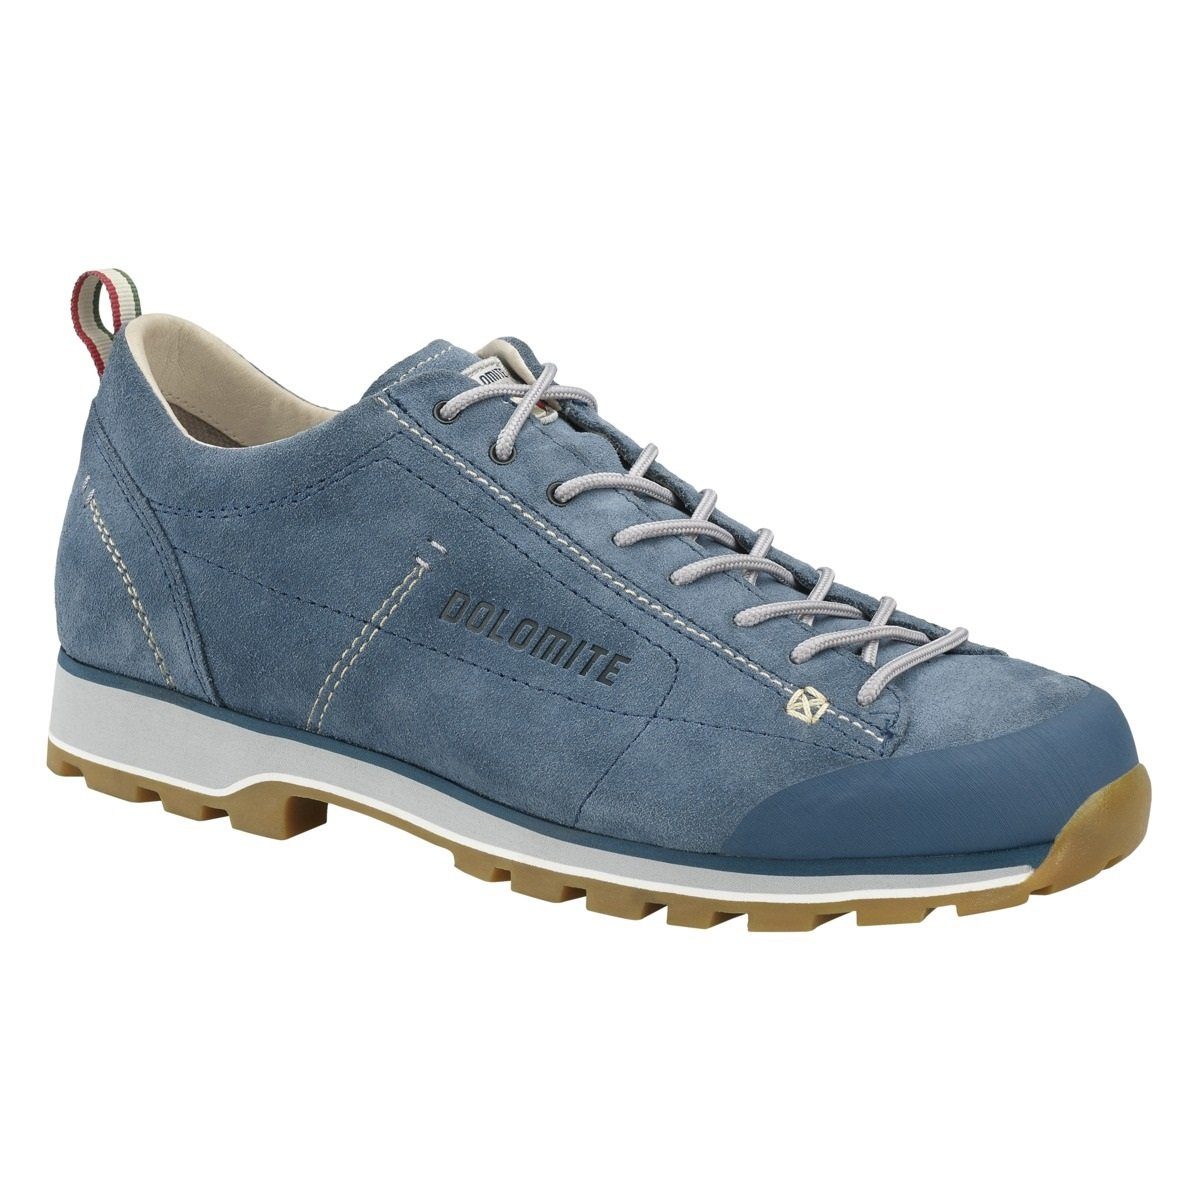 Cinquantaquattro 0023 Blue Low DOLOMITE Anthracite/ Dolomite Outdoorschuh Shoe